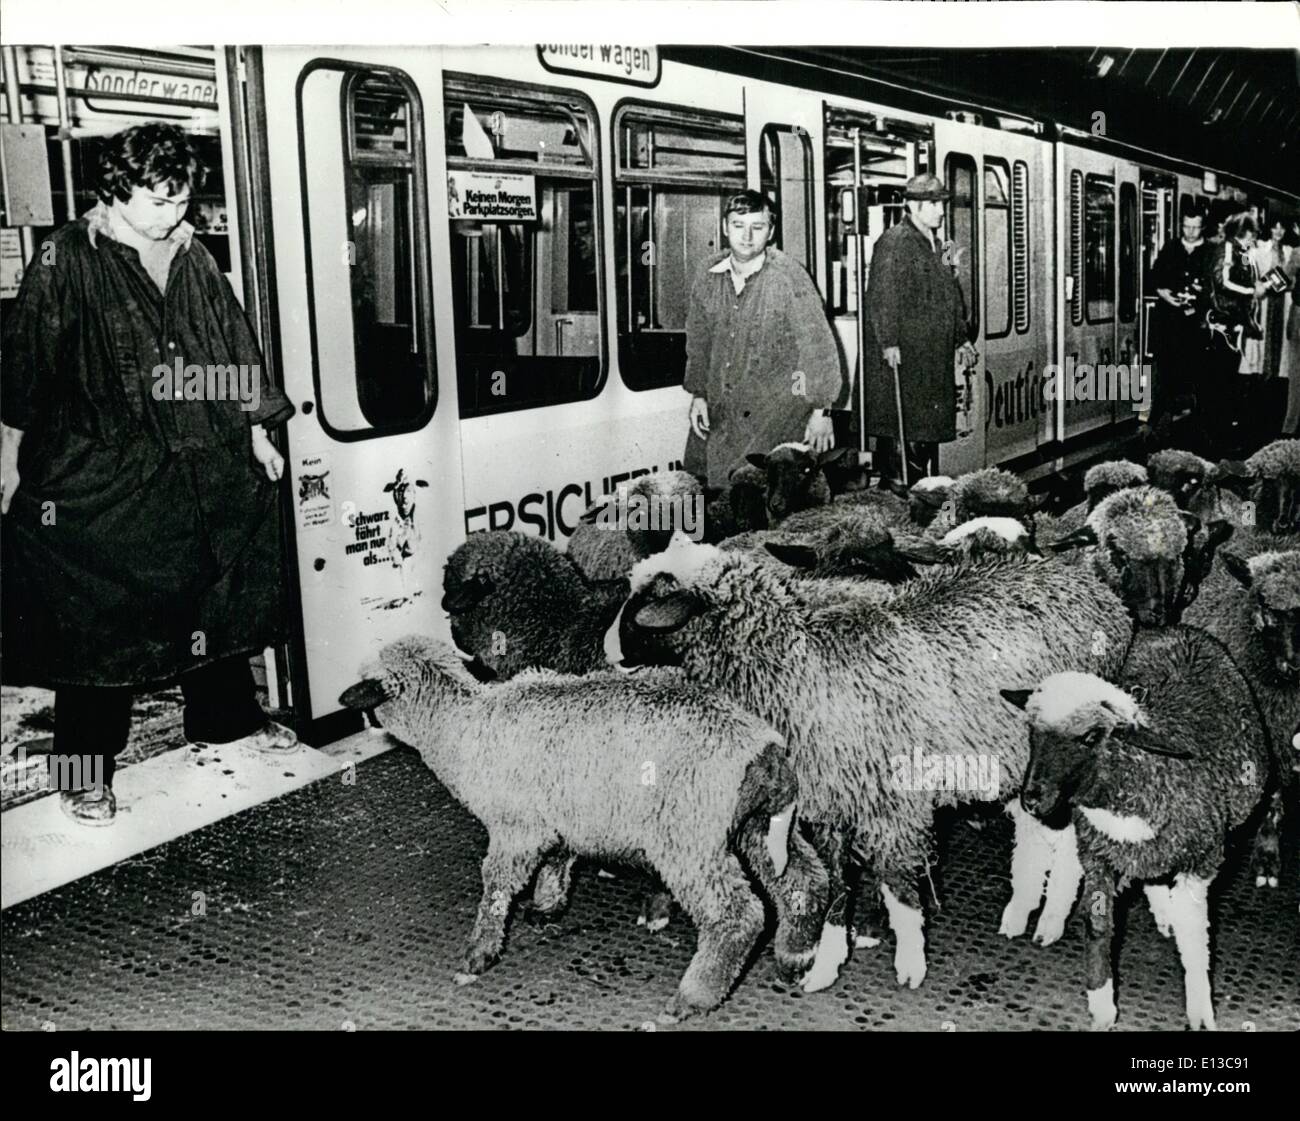 Mars 02, 2012 - Bonn's ''Black Sheep'' le ''Black Sheep'' sont compter les banlieusards dans la capitale allemande, qui omettent de payer leur billet. Comme la ville est en train de perdre 2 millions de marks par an. Les autorités de la ville ont organisé une manifestation de mettre 20 moutons noirs sur le sous-titre, de manière à signaler à leurs citoyens de leur erreur. Banque D'Images